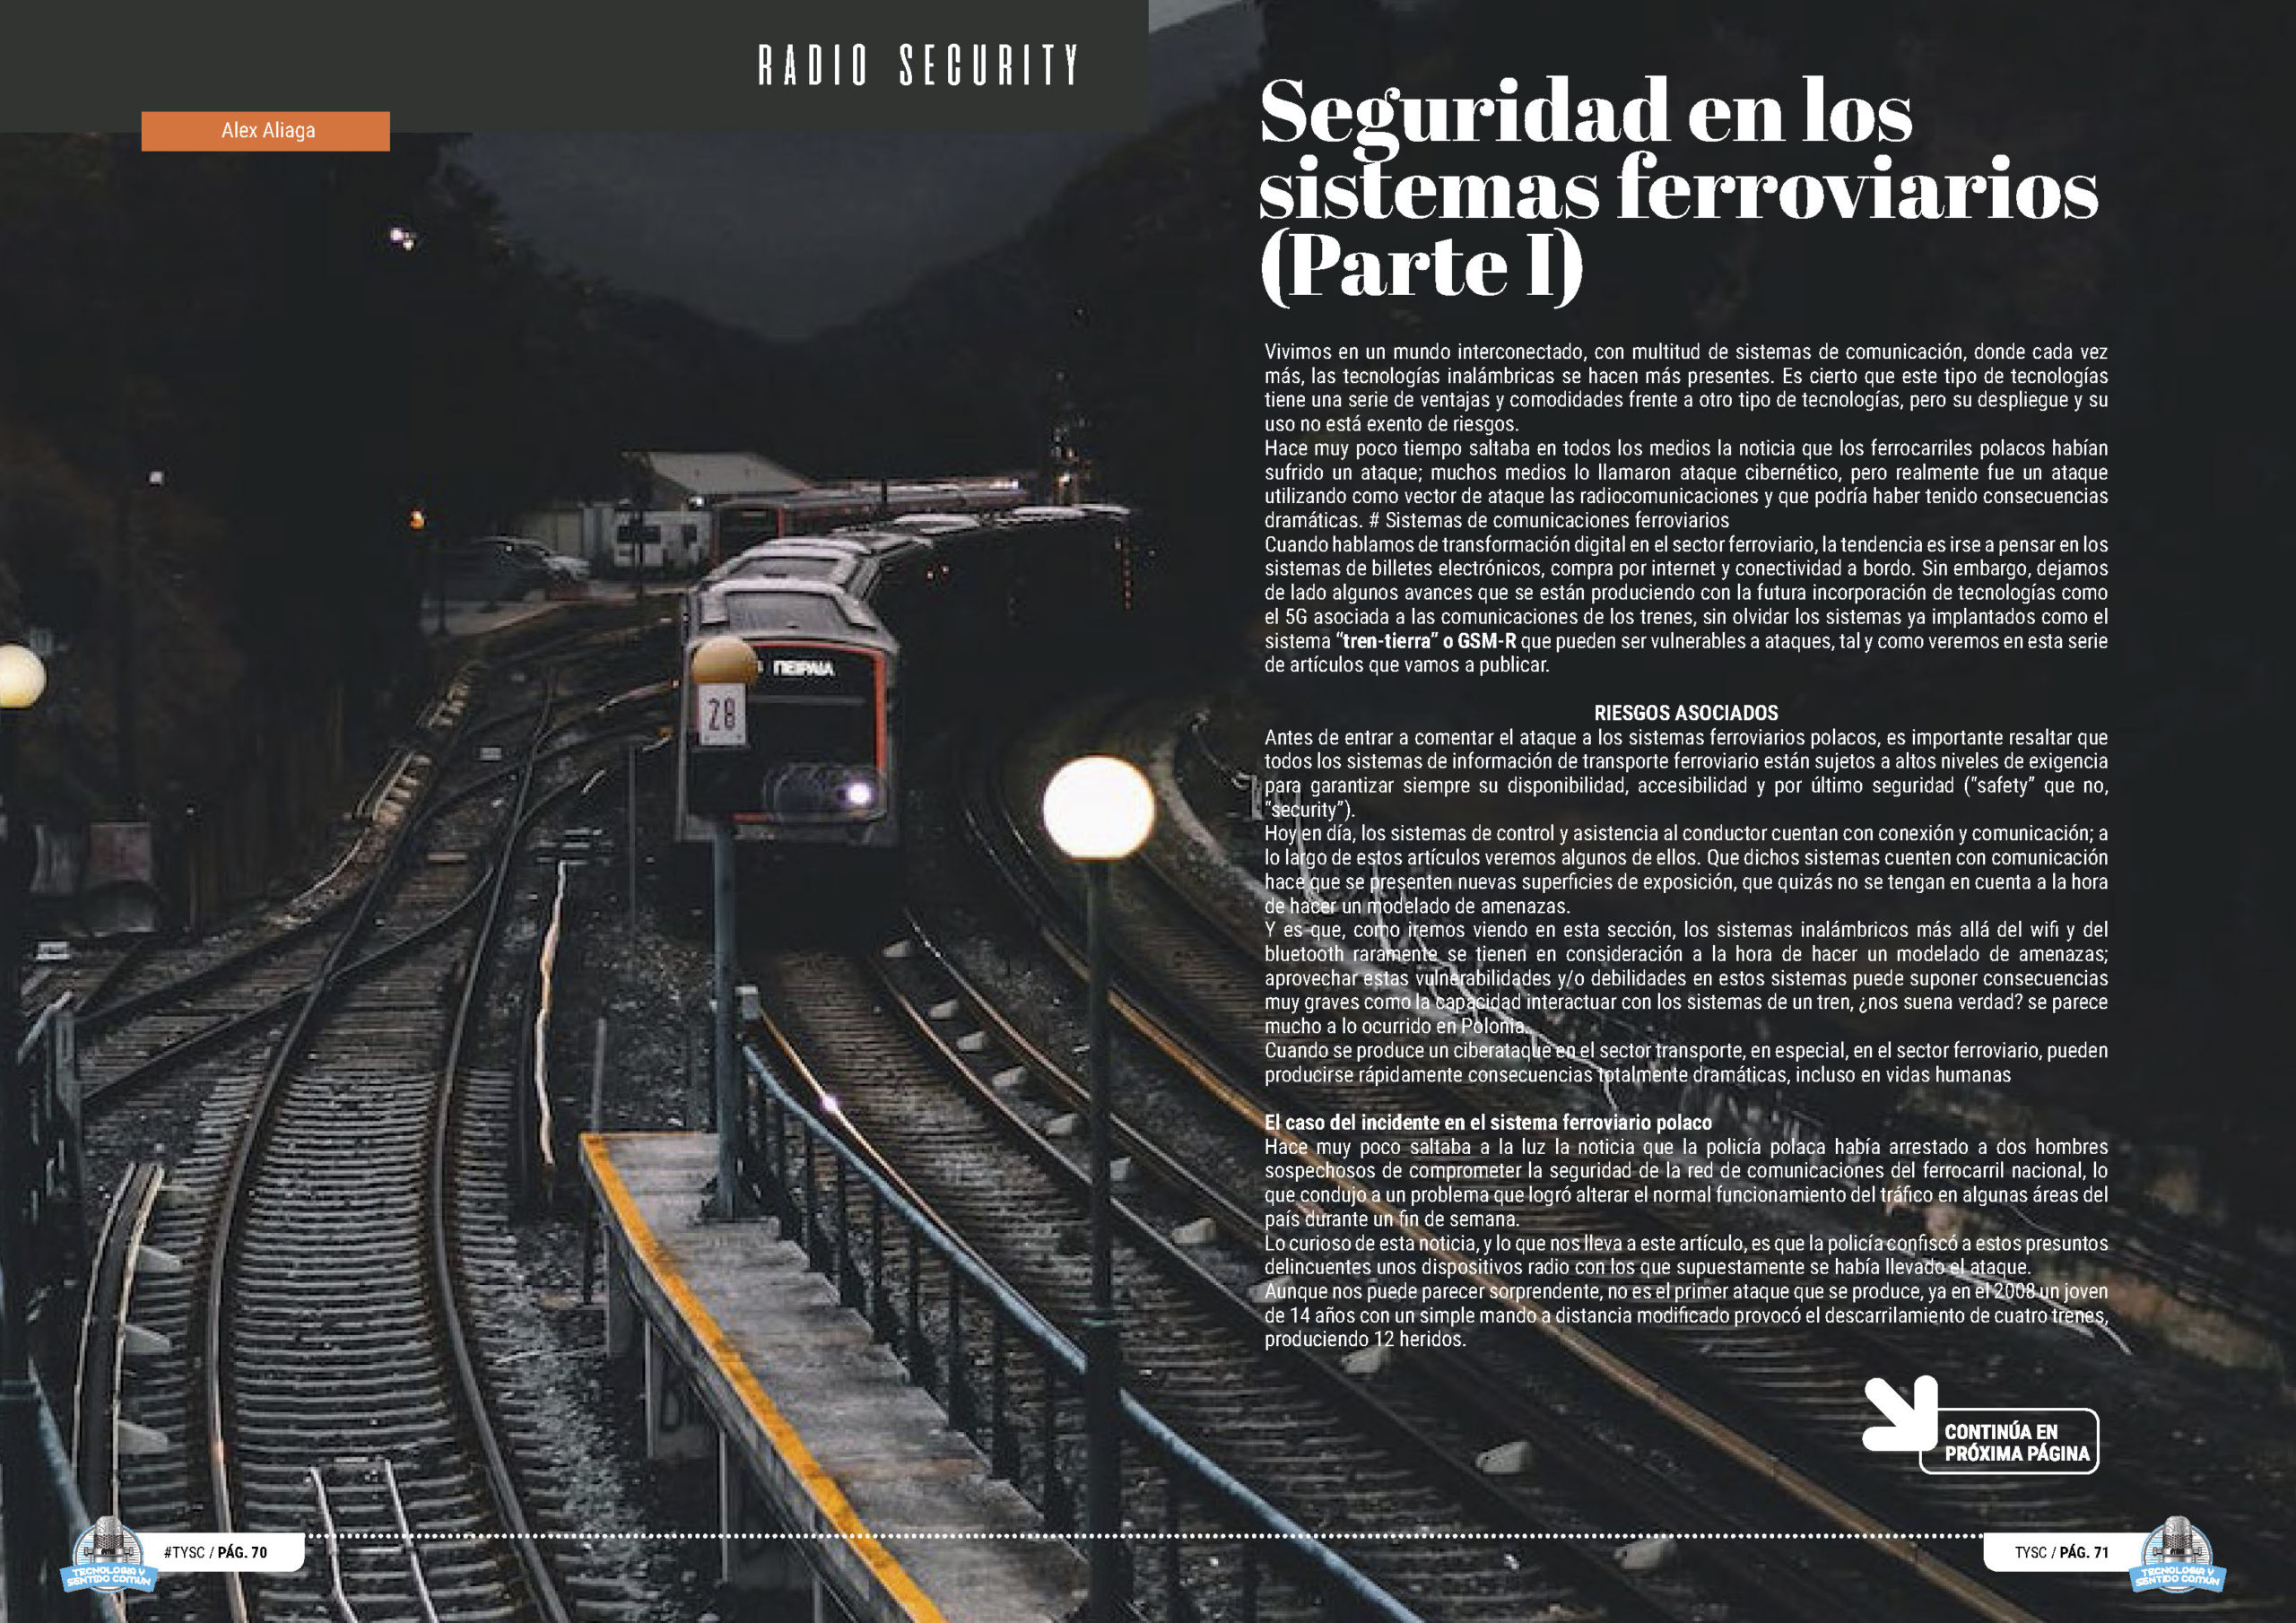 "Seguridad en los sistemas ferroviarios (Parte I)" artículo de Alejandro Aliaga Casanova en la seccion "Radio Security" de la edición de octubre de la Revista Mensual Tecnología y Sentido Común TYSC